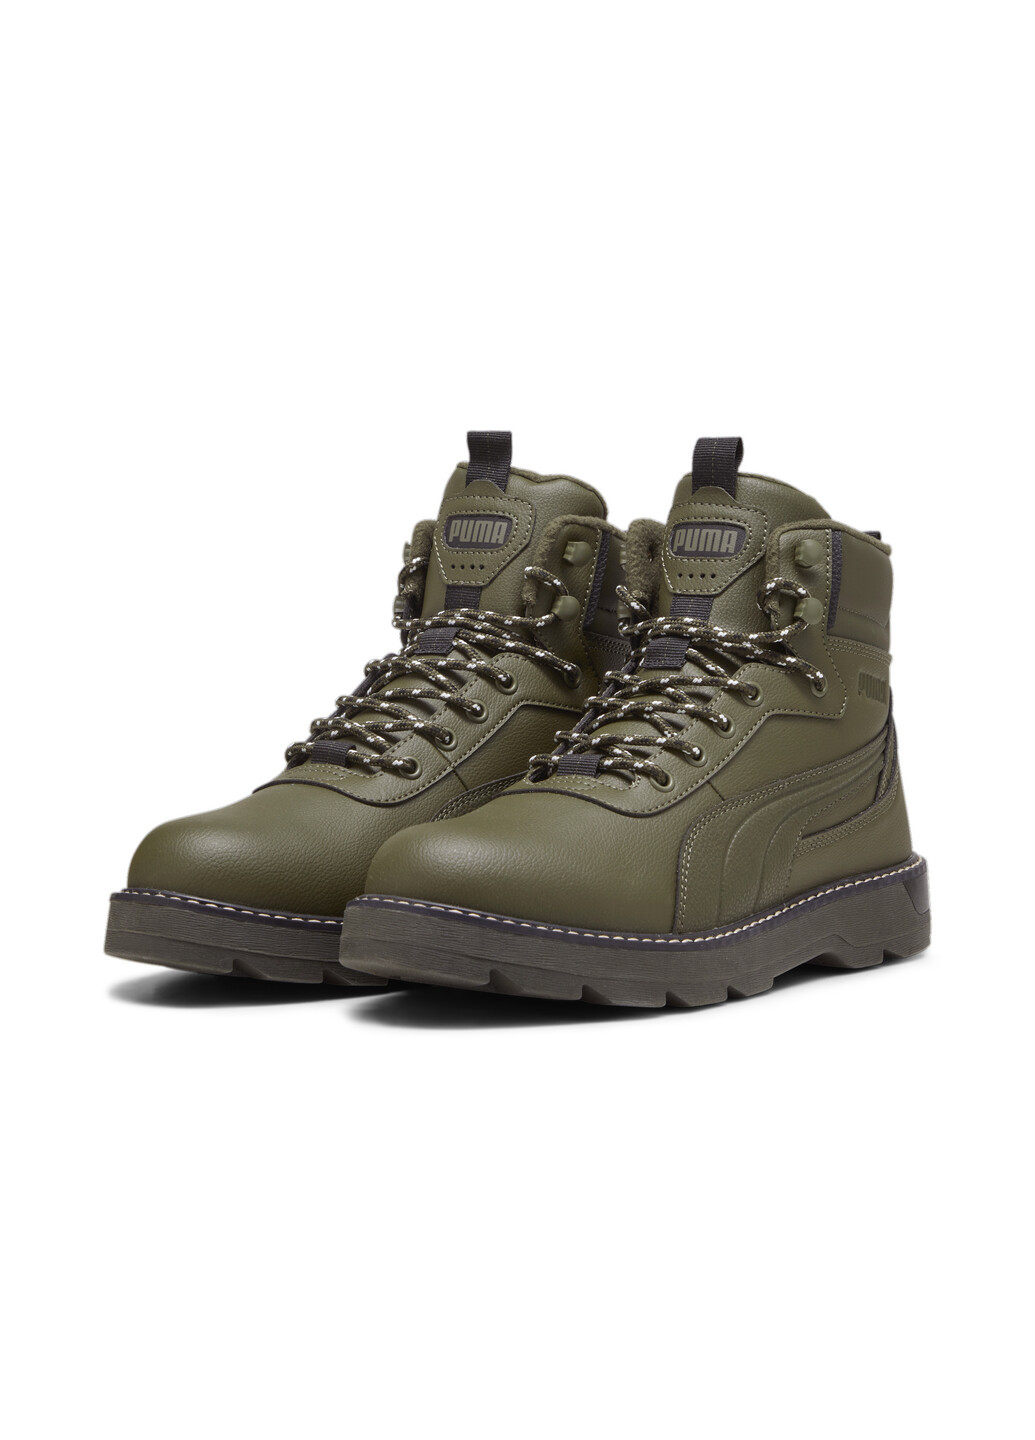 Зеленые зимние ботинки desierto v3 boots Puma